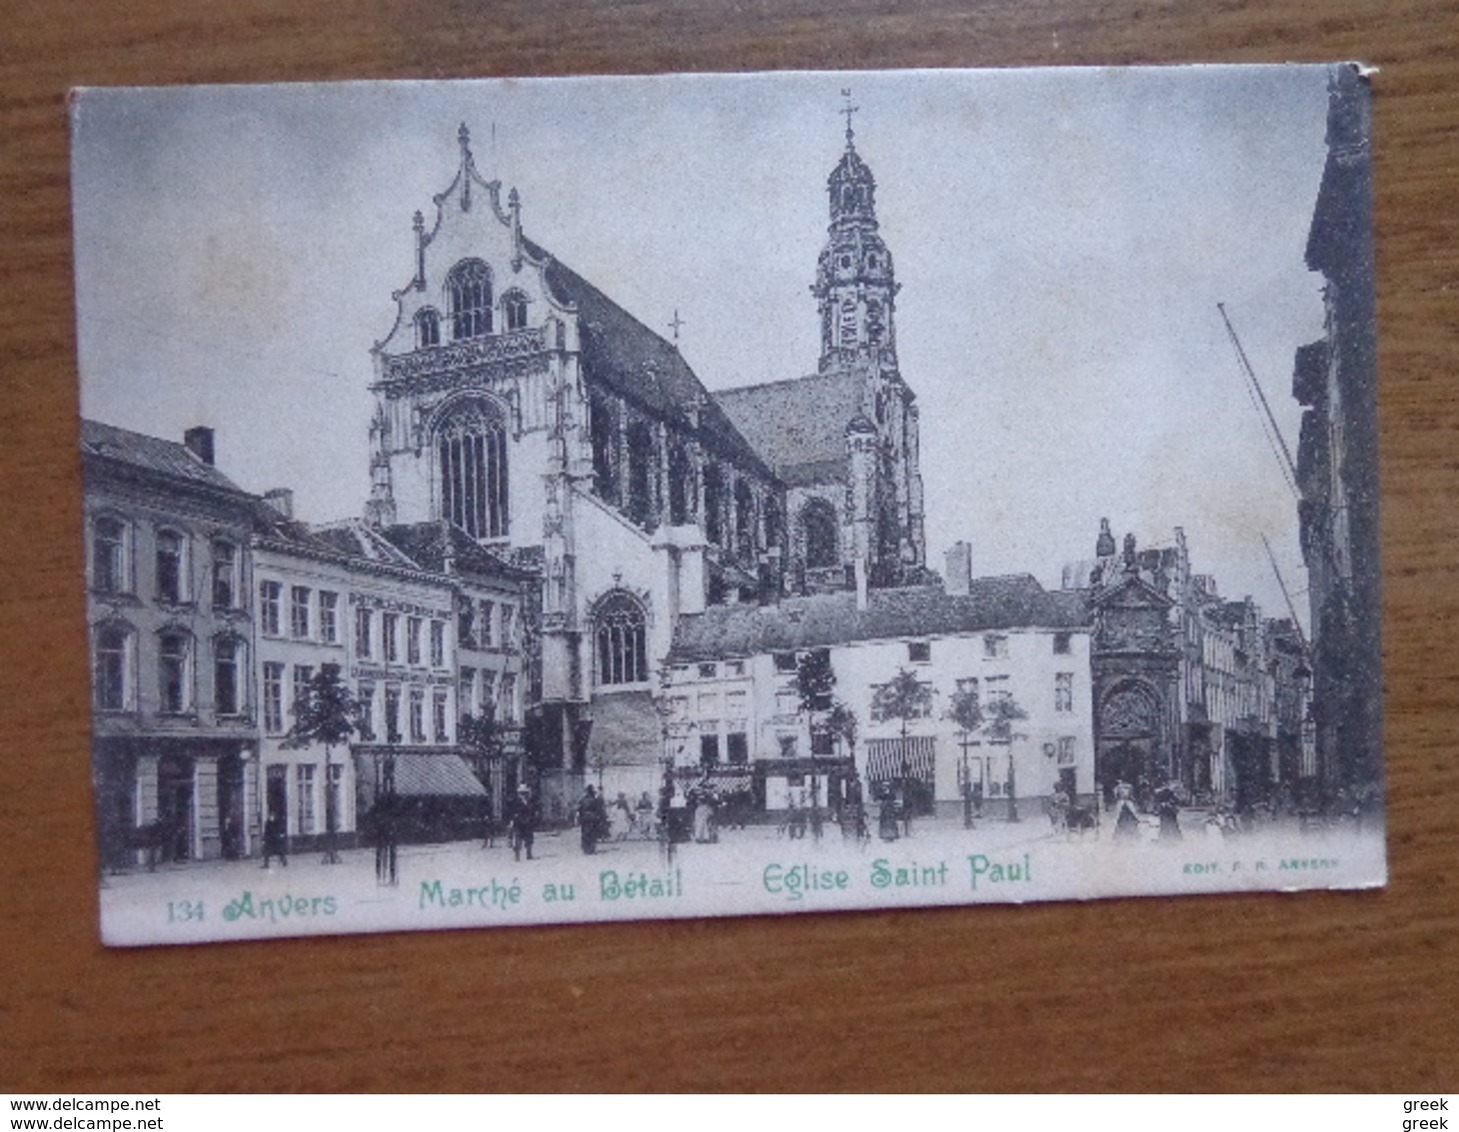 100 oude kaarten van België - Belgique (zie vele foto's)